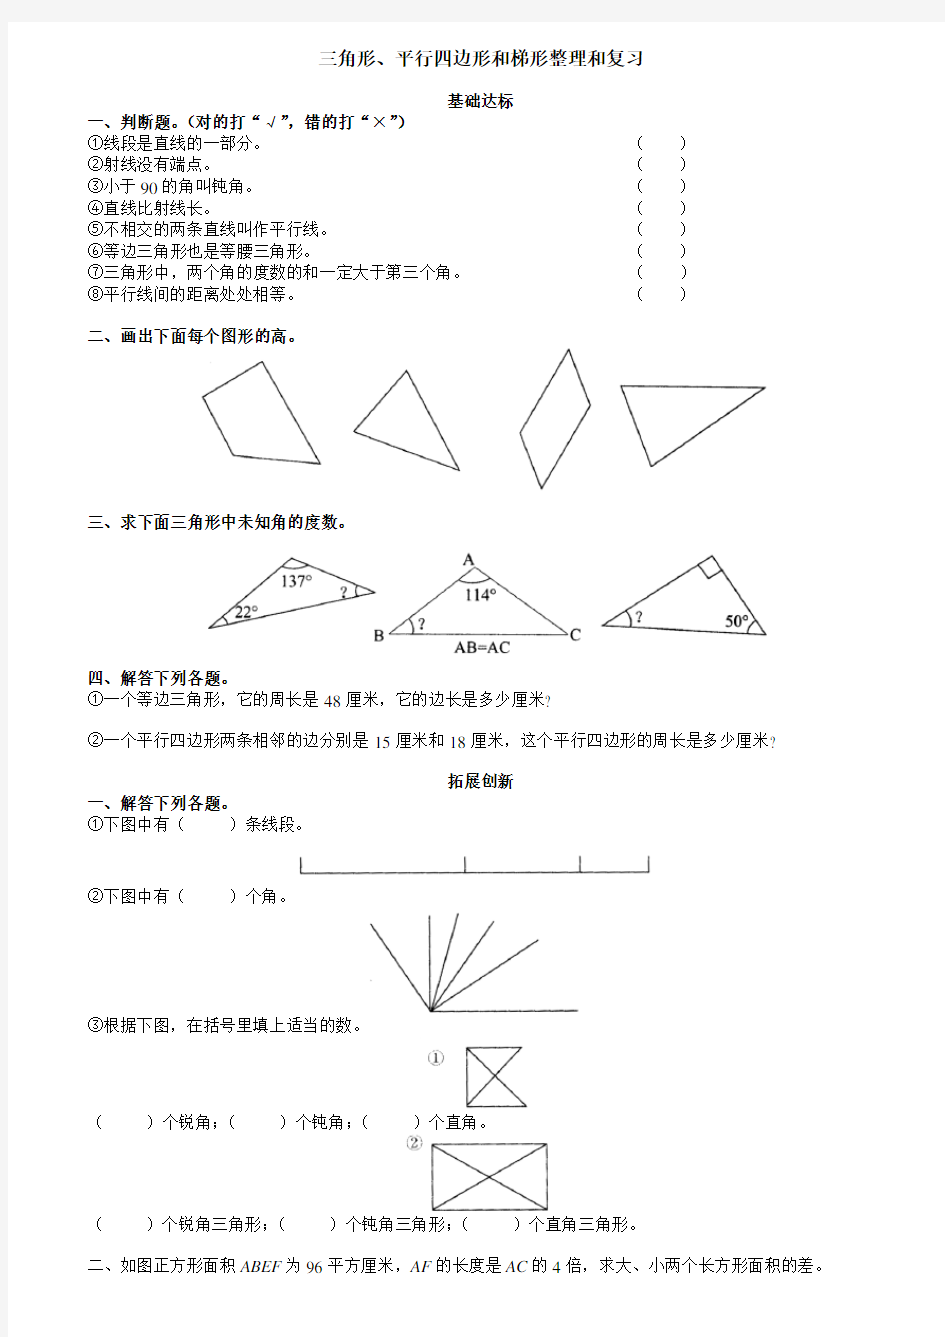 小学四年级数学三角形、平行四边形和梯形的练习题